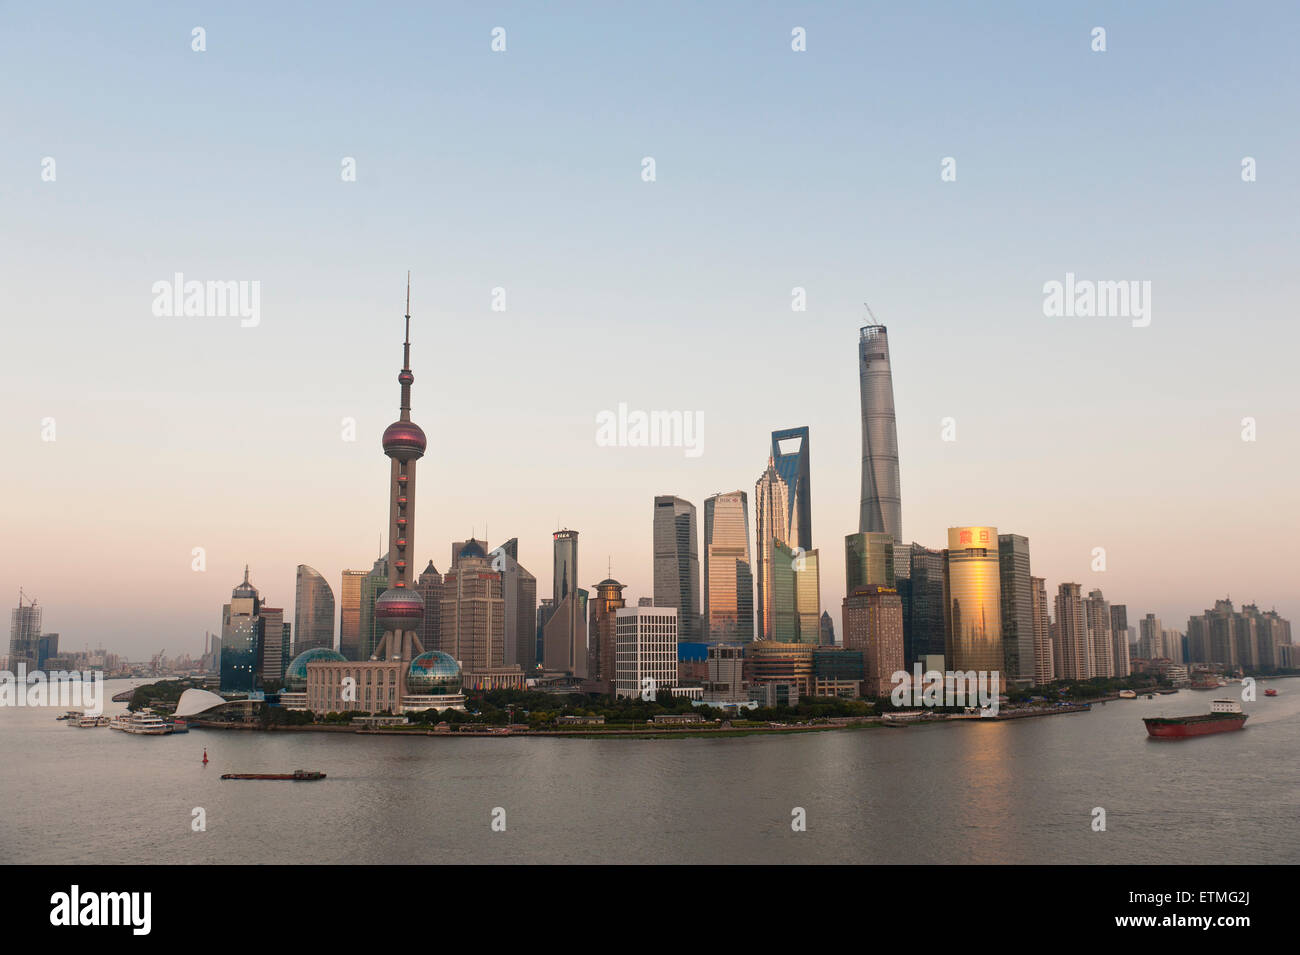 Skyline avec les gratte-ciel, la tour de télévision Oriental Pearl Tower, Tour de Shanghai, tour Jin Mao, la rivière Huangpu, Pudong, Shanghai Banque D'Images